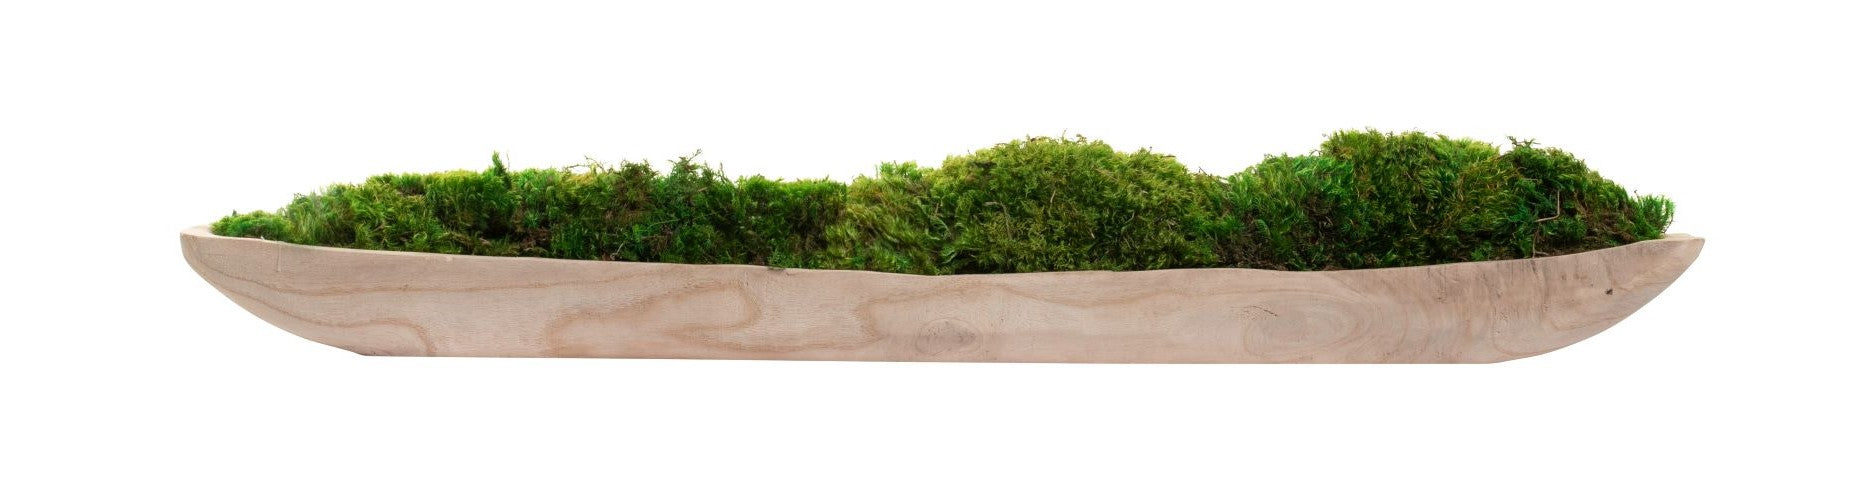 36" Sedona Wood Tray Planter with Mood Moss   AR1391